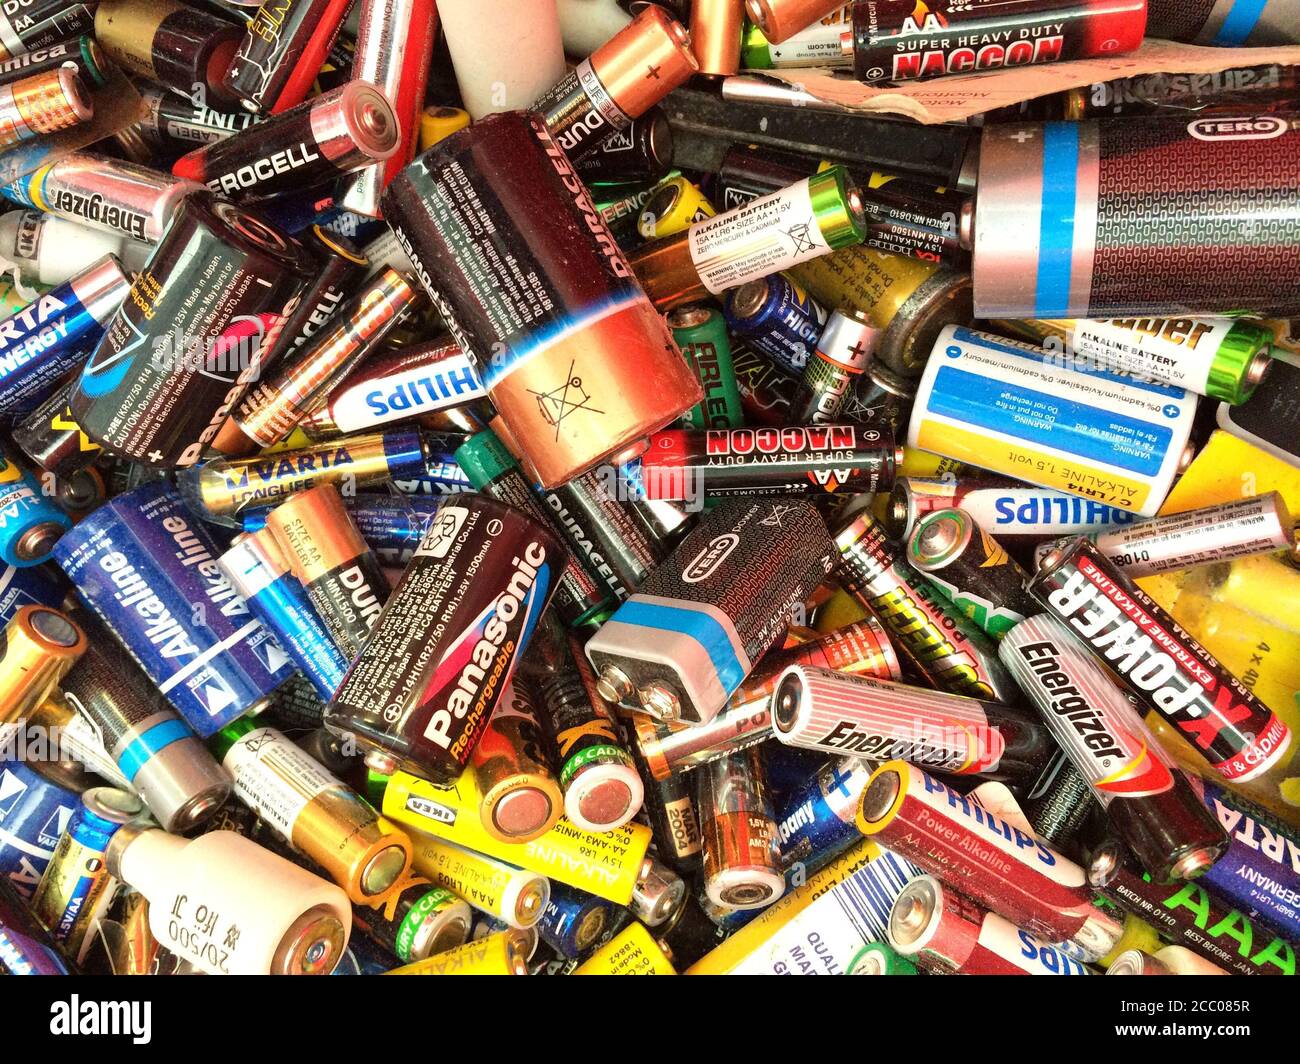 Viele gebrauchte kleine Alkali-Batterien Hintergrund, D, C, AA, AAA, AAAA, A23, PP3 und mehr Batterien. Stockfoto